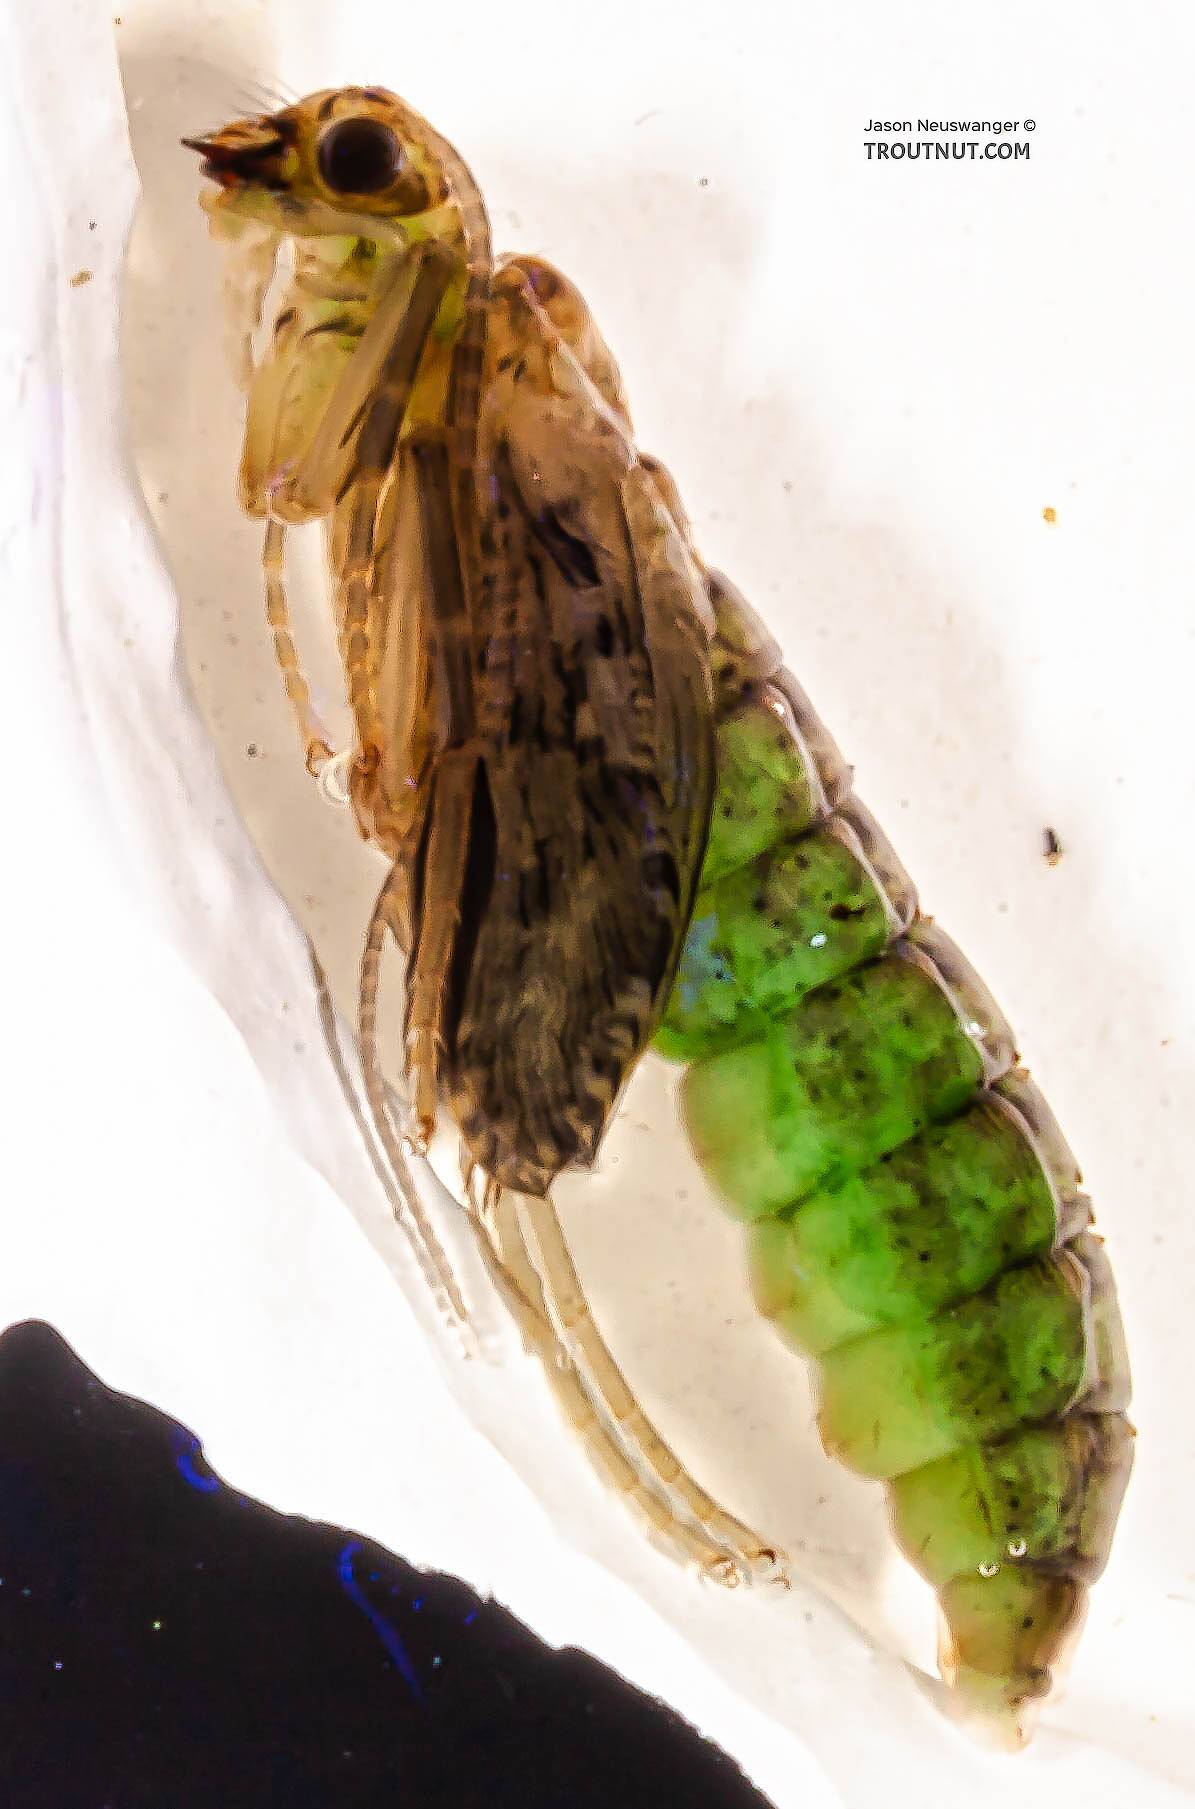 Rhyacophila (Green Sedges) Caddisfly Pupa